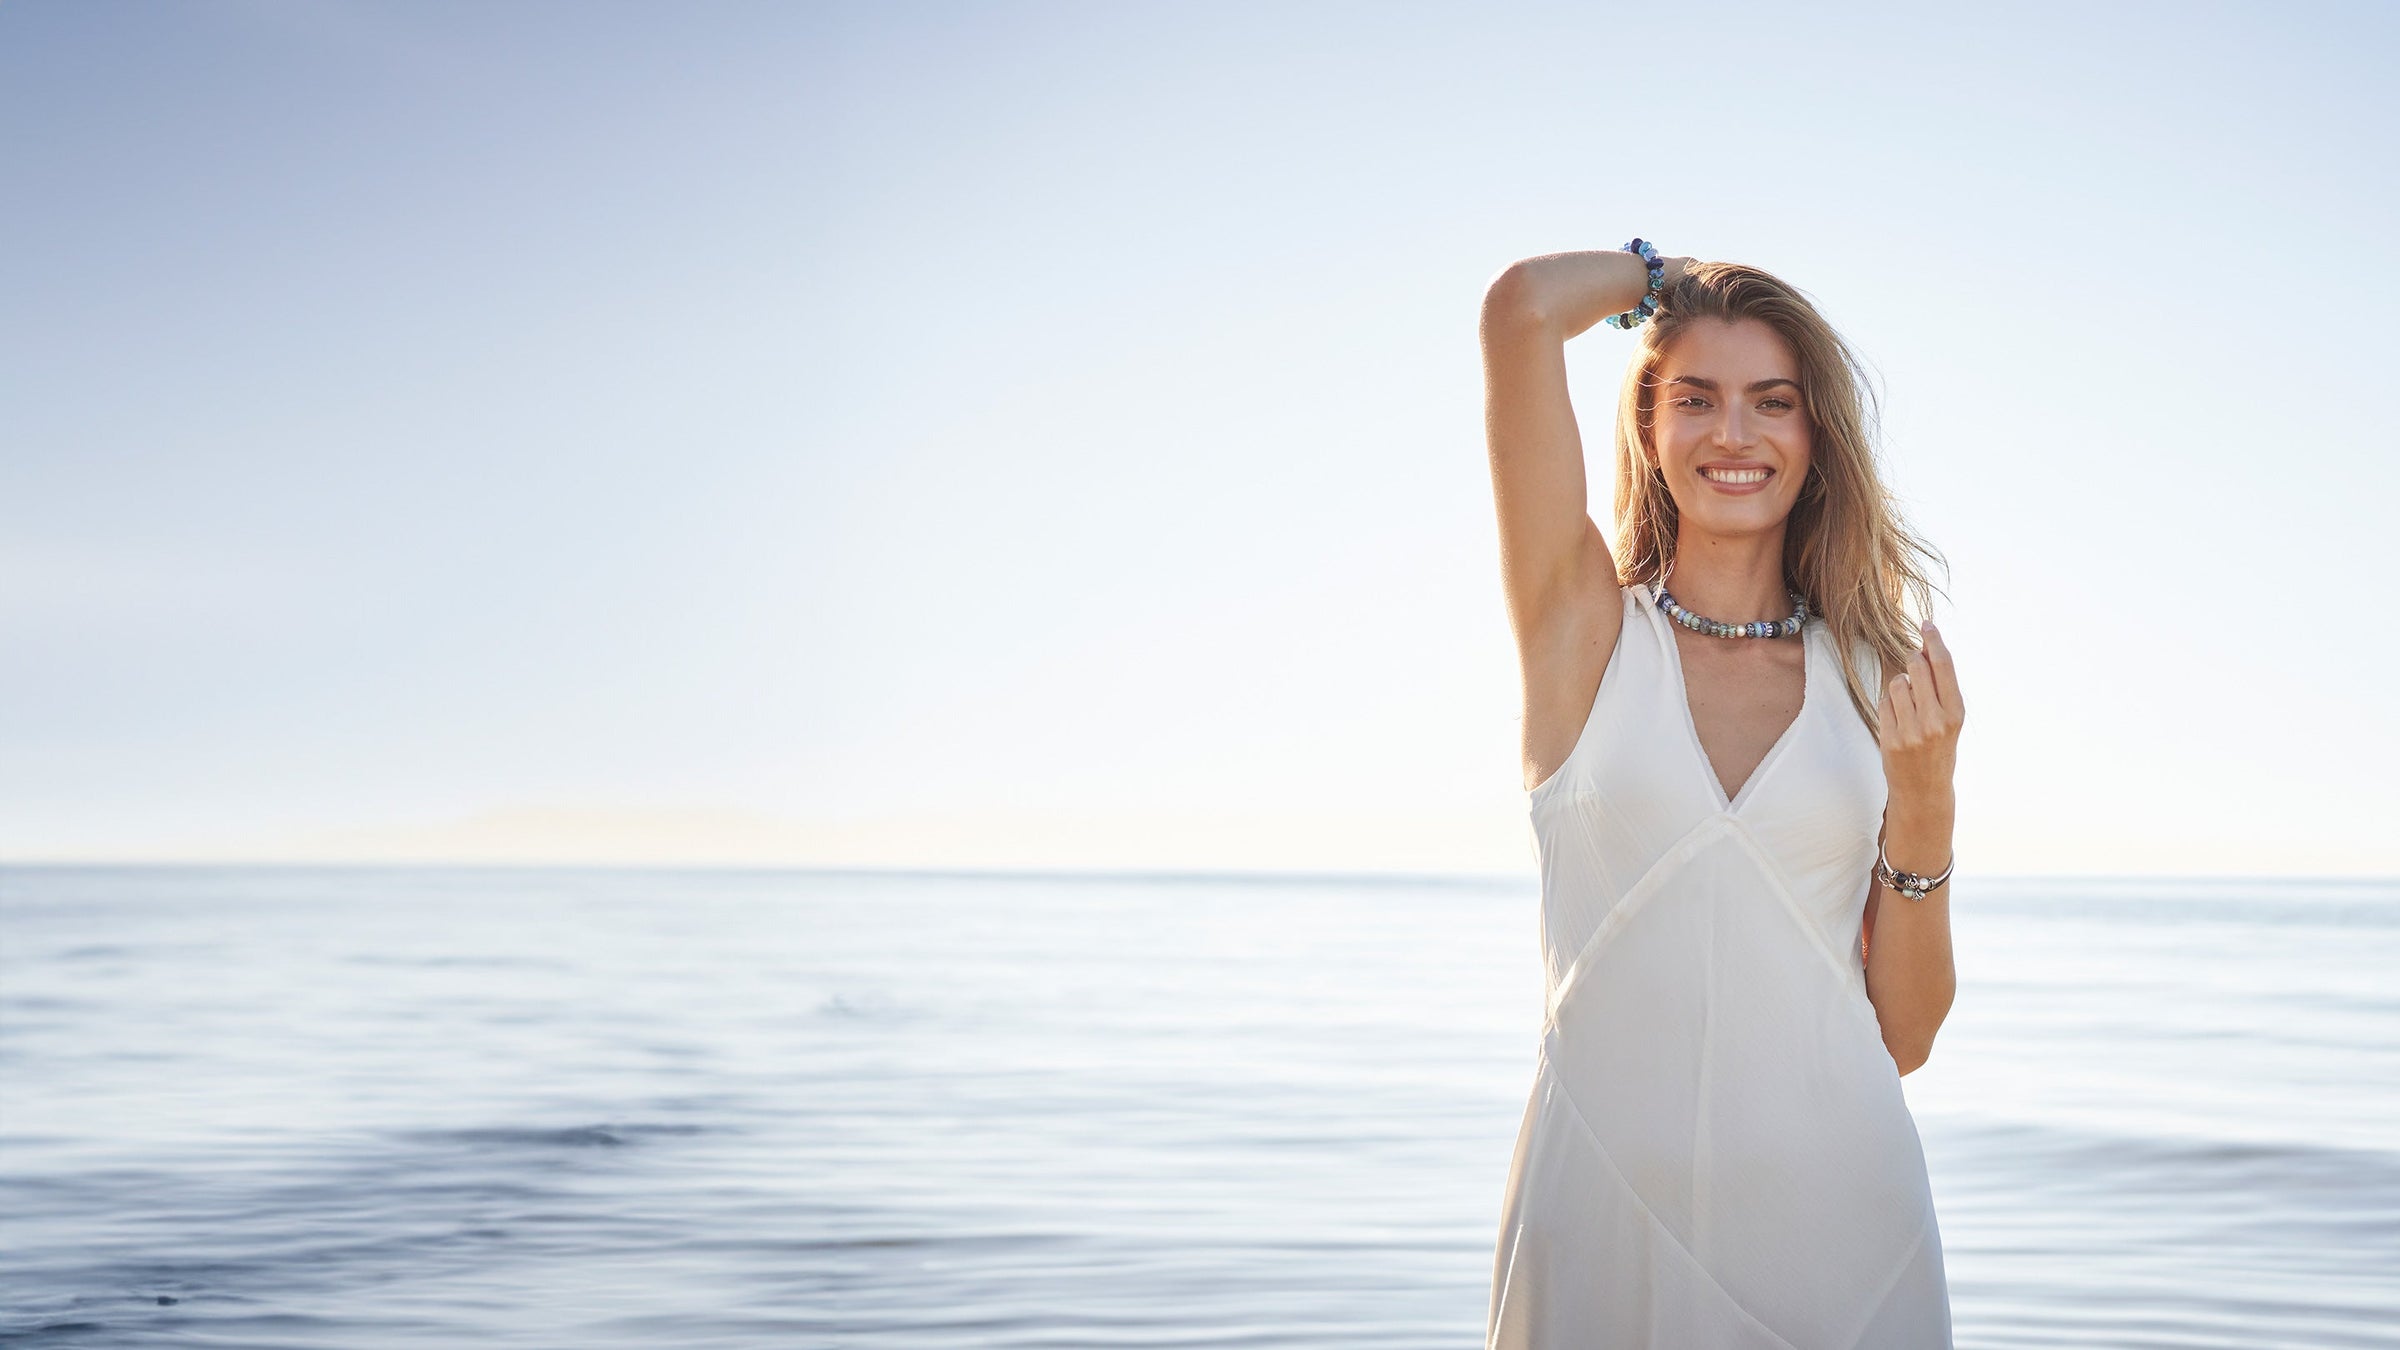 Modèle portant un collier et un bracelet en perles de verre Trollbeads, debout dans l'eau sur une plage, souriant.